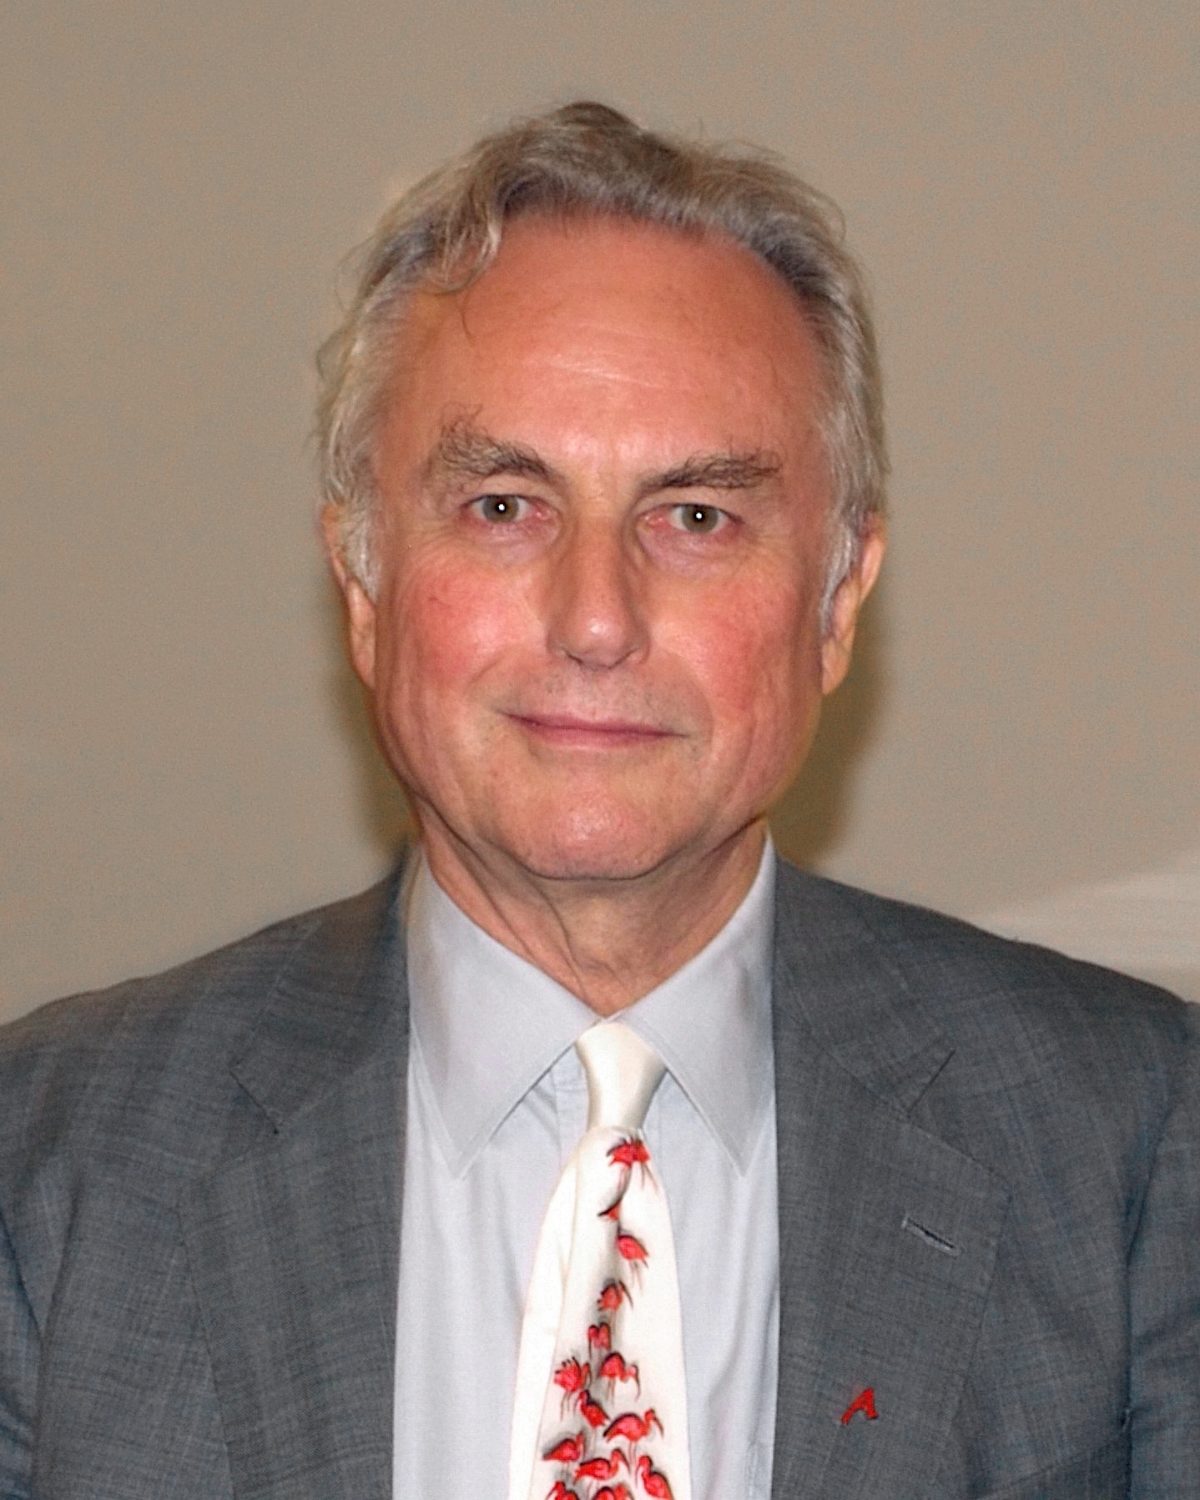 Portrait photo de Richard Dawkins, aux cheveux grisonnant. Il porte un costume gris. Il regarde droit vers l'objectif avec un léger sourire. Sur cette photo, il a environ 70 ans.